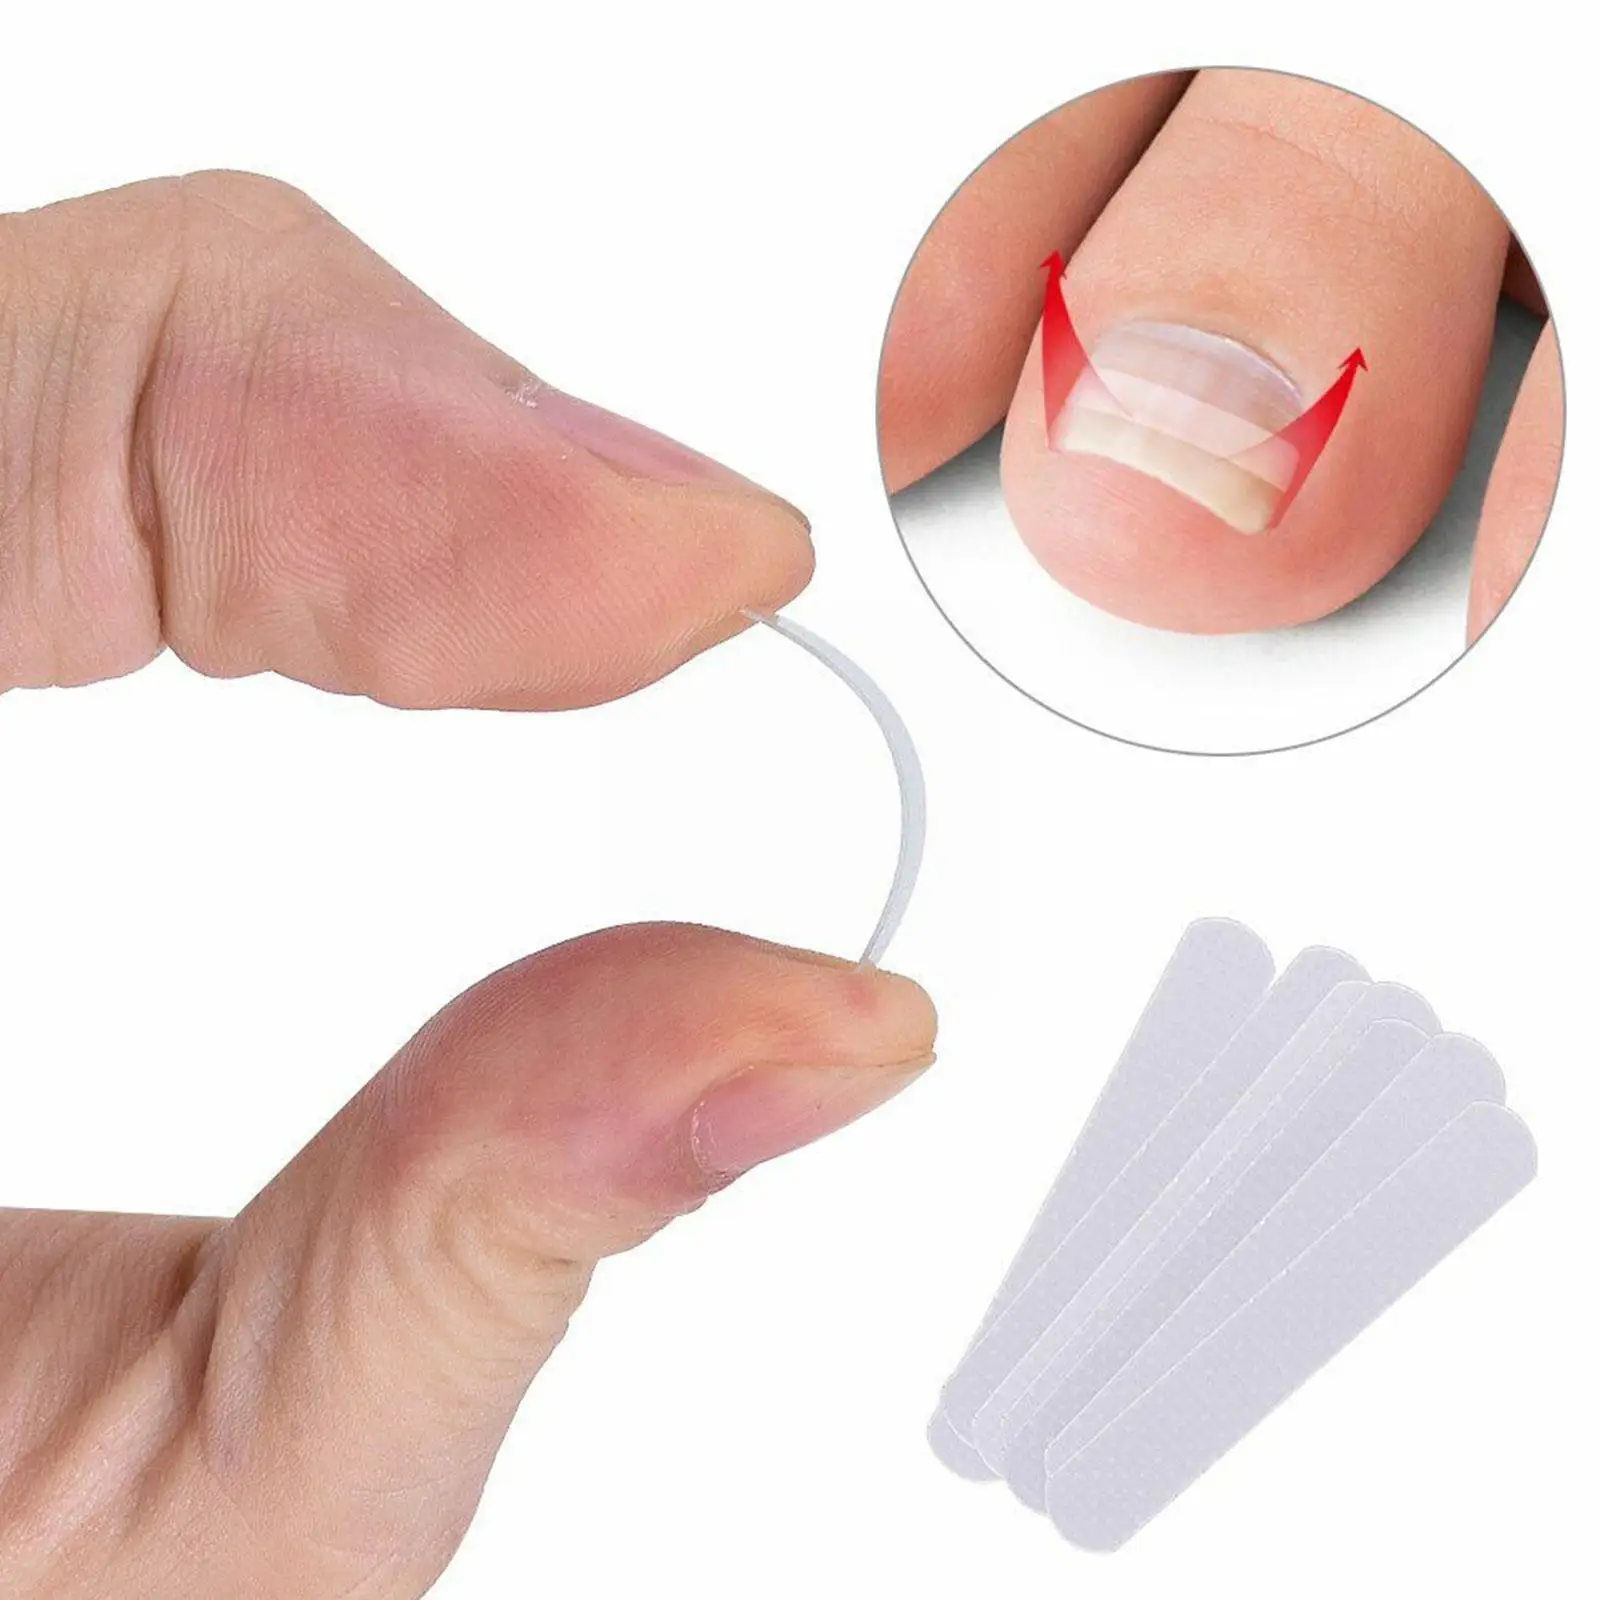 

10 шт./компл. выпрямитель для вросших ног клипса для коррекции эластичных ногтей изогнутая зажим-скобка выпрямитель Наклейка для выпрямления эластичные ногти H2o0